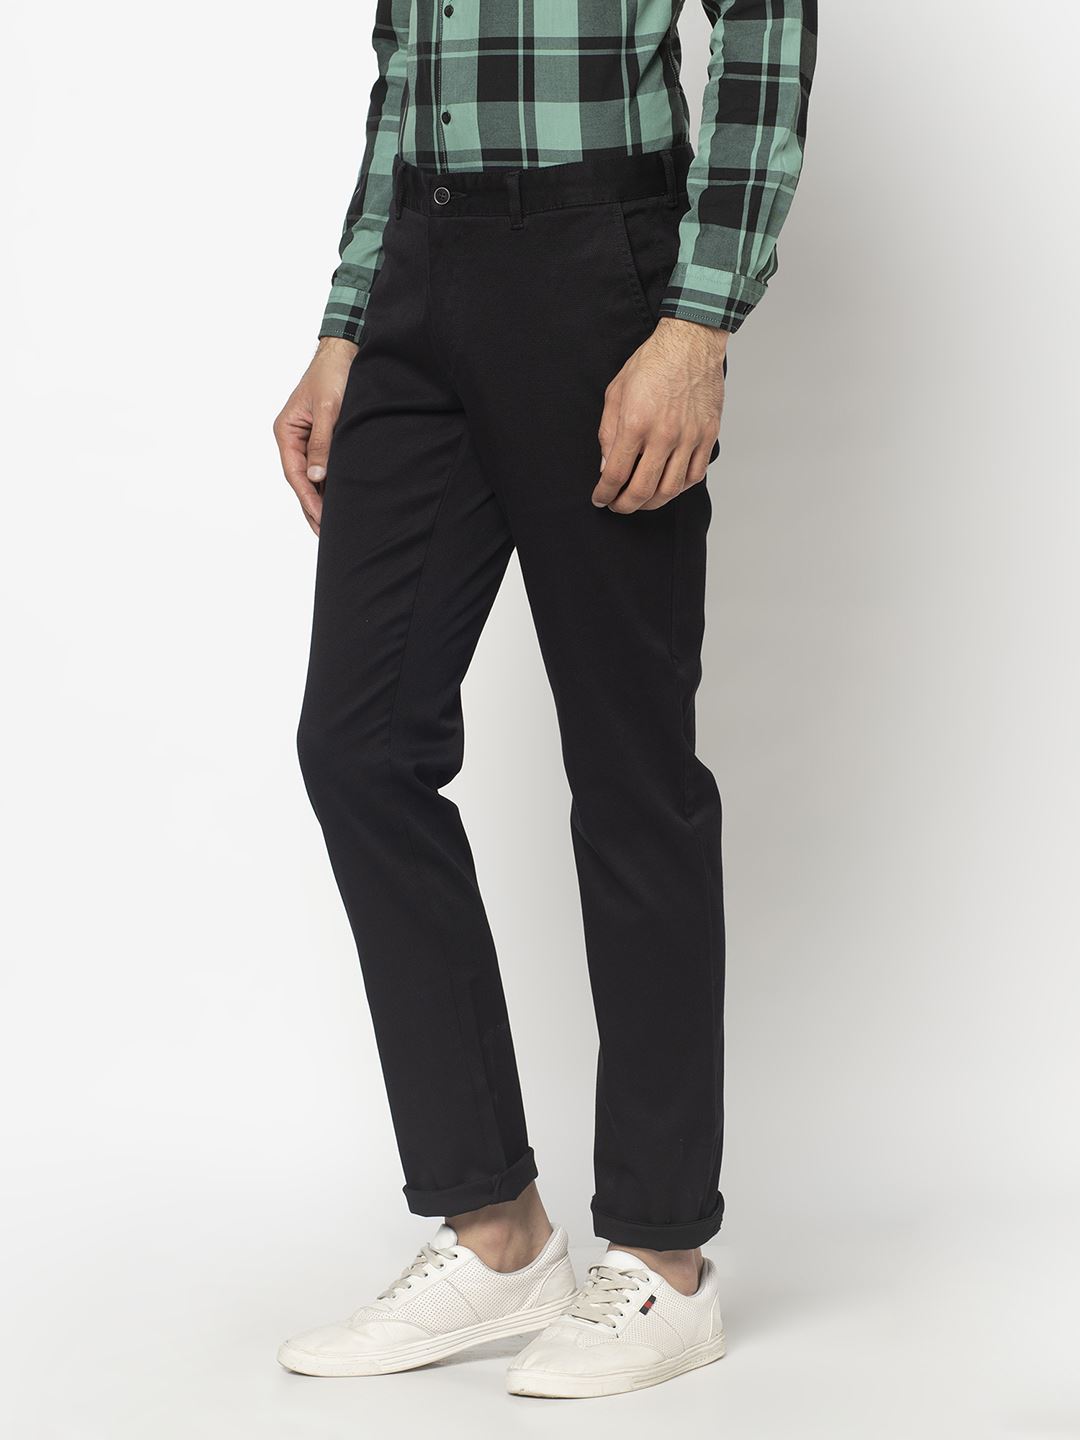 B-95 Slim Fit Trousers for Men | Blackberrys Menswear - YouTube